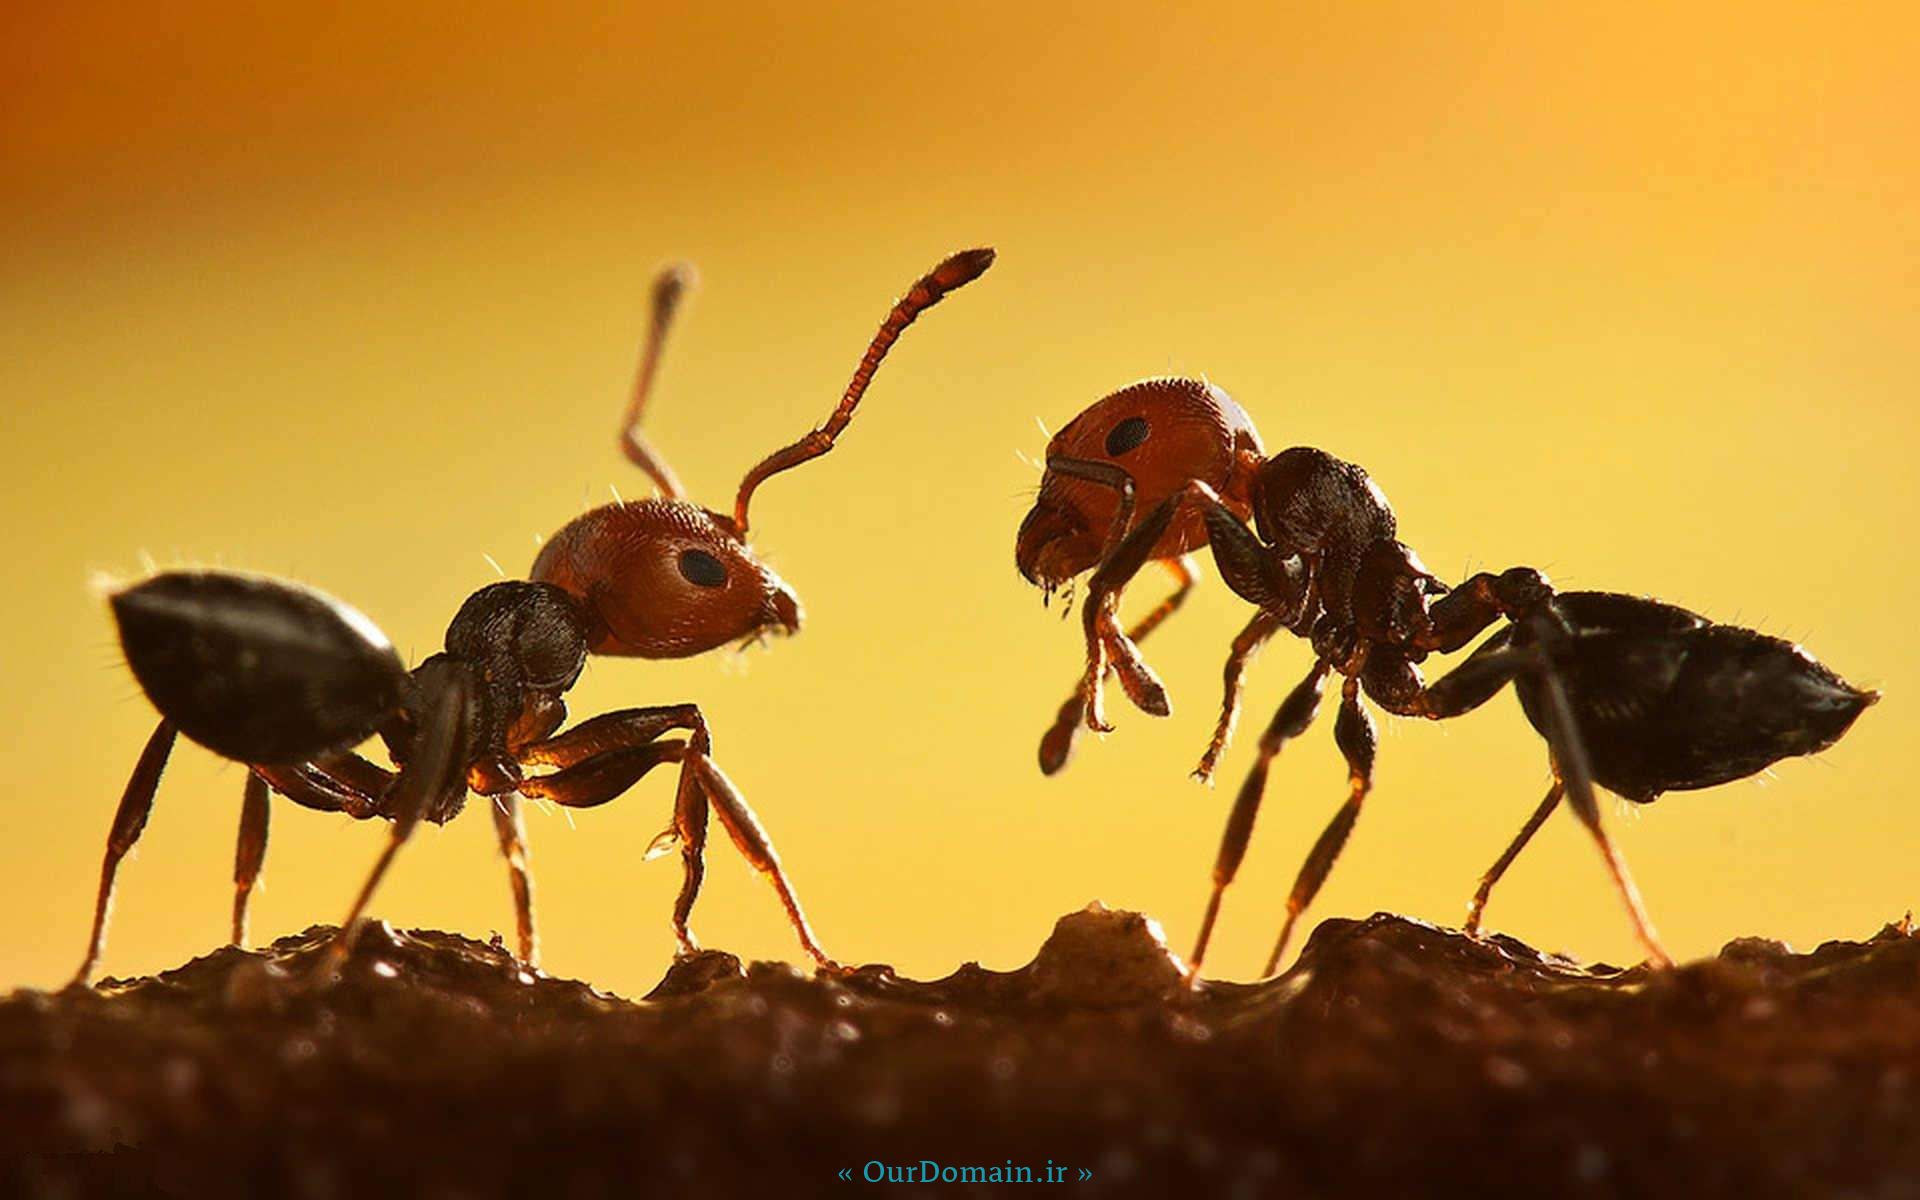 مختصری در مورد زندگی مورچه ها